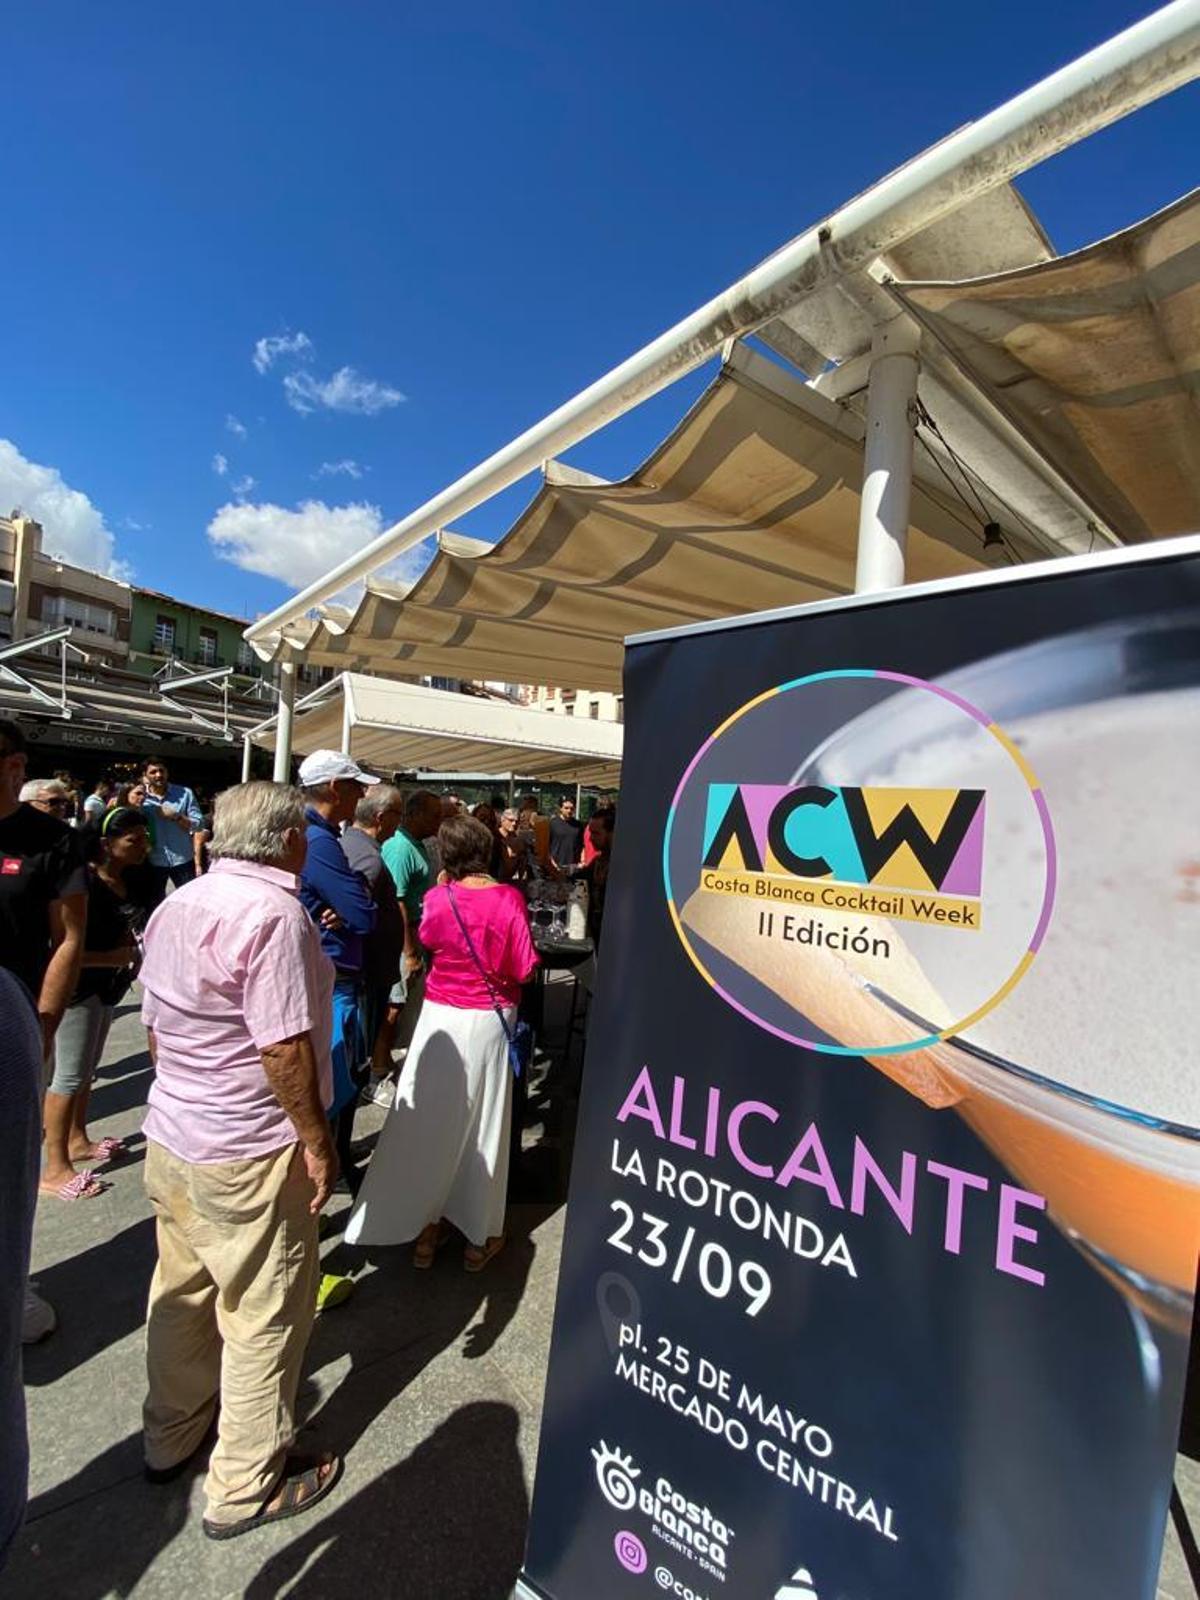 La Rotonda de Alicante partició del evento del pasado sábado.